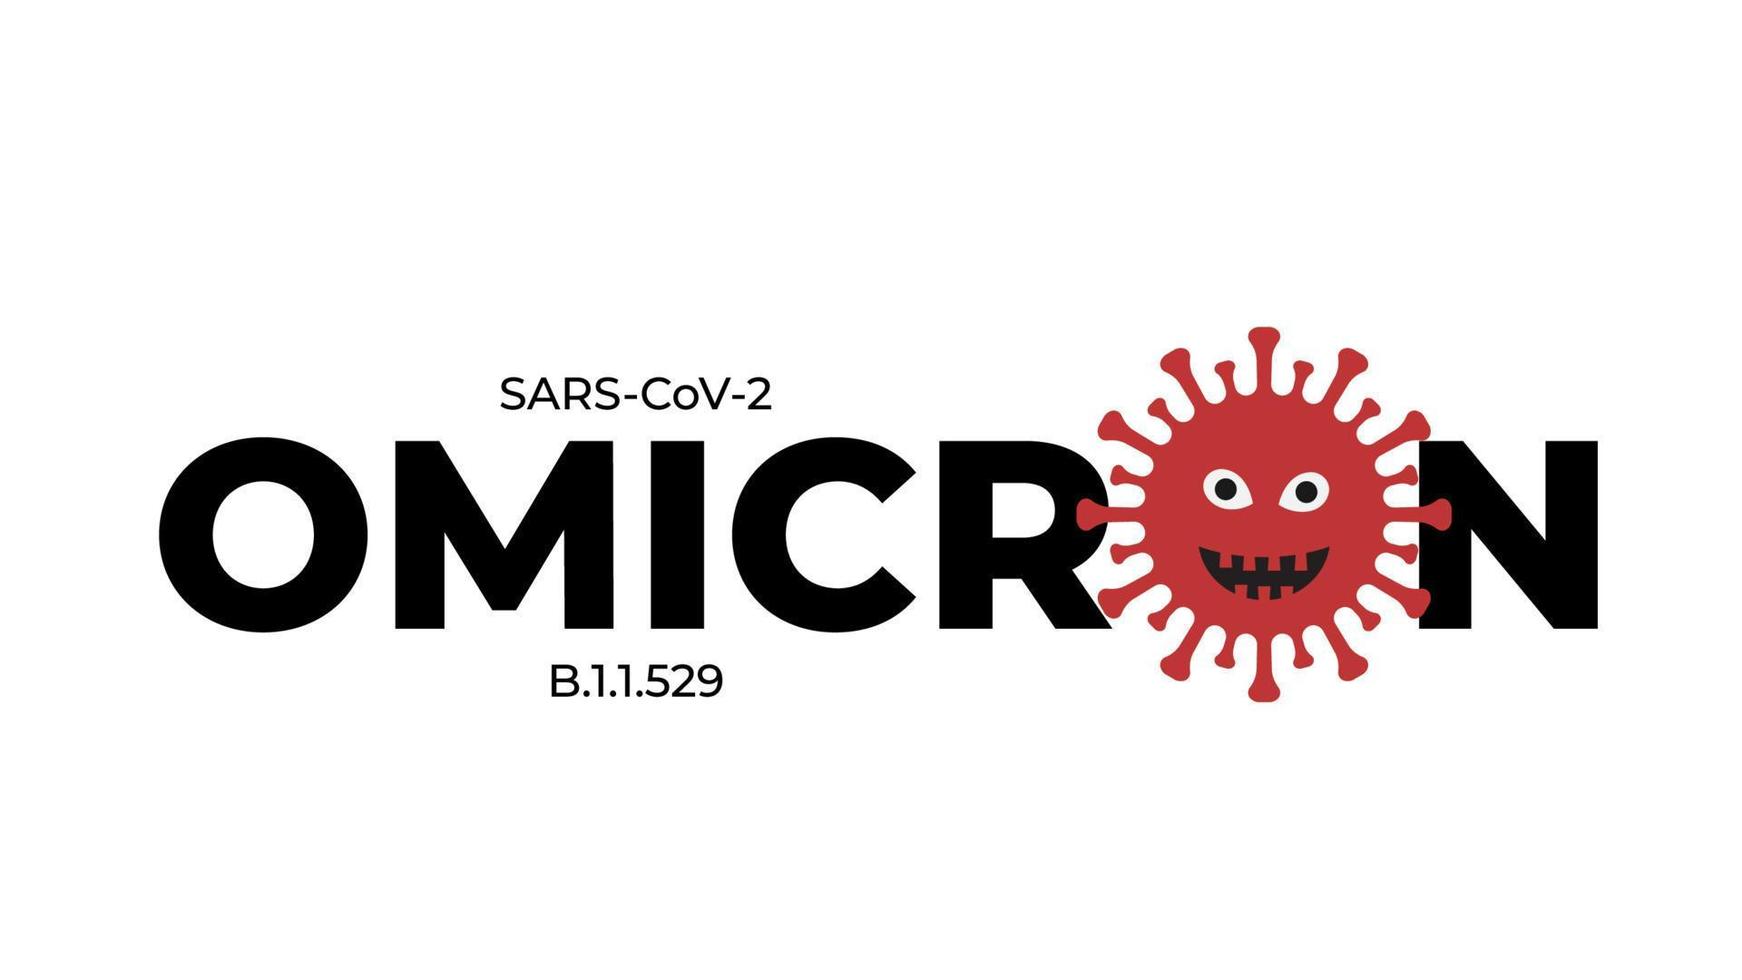 variante omicron du coronavirus covid-19. pandémie de virus sars-cov-2. modèle vectoriel pour affiche de typographie, bannière, flyer, etc.